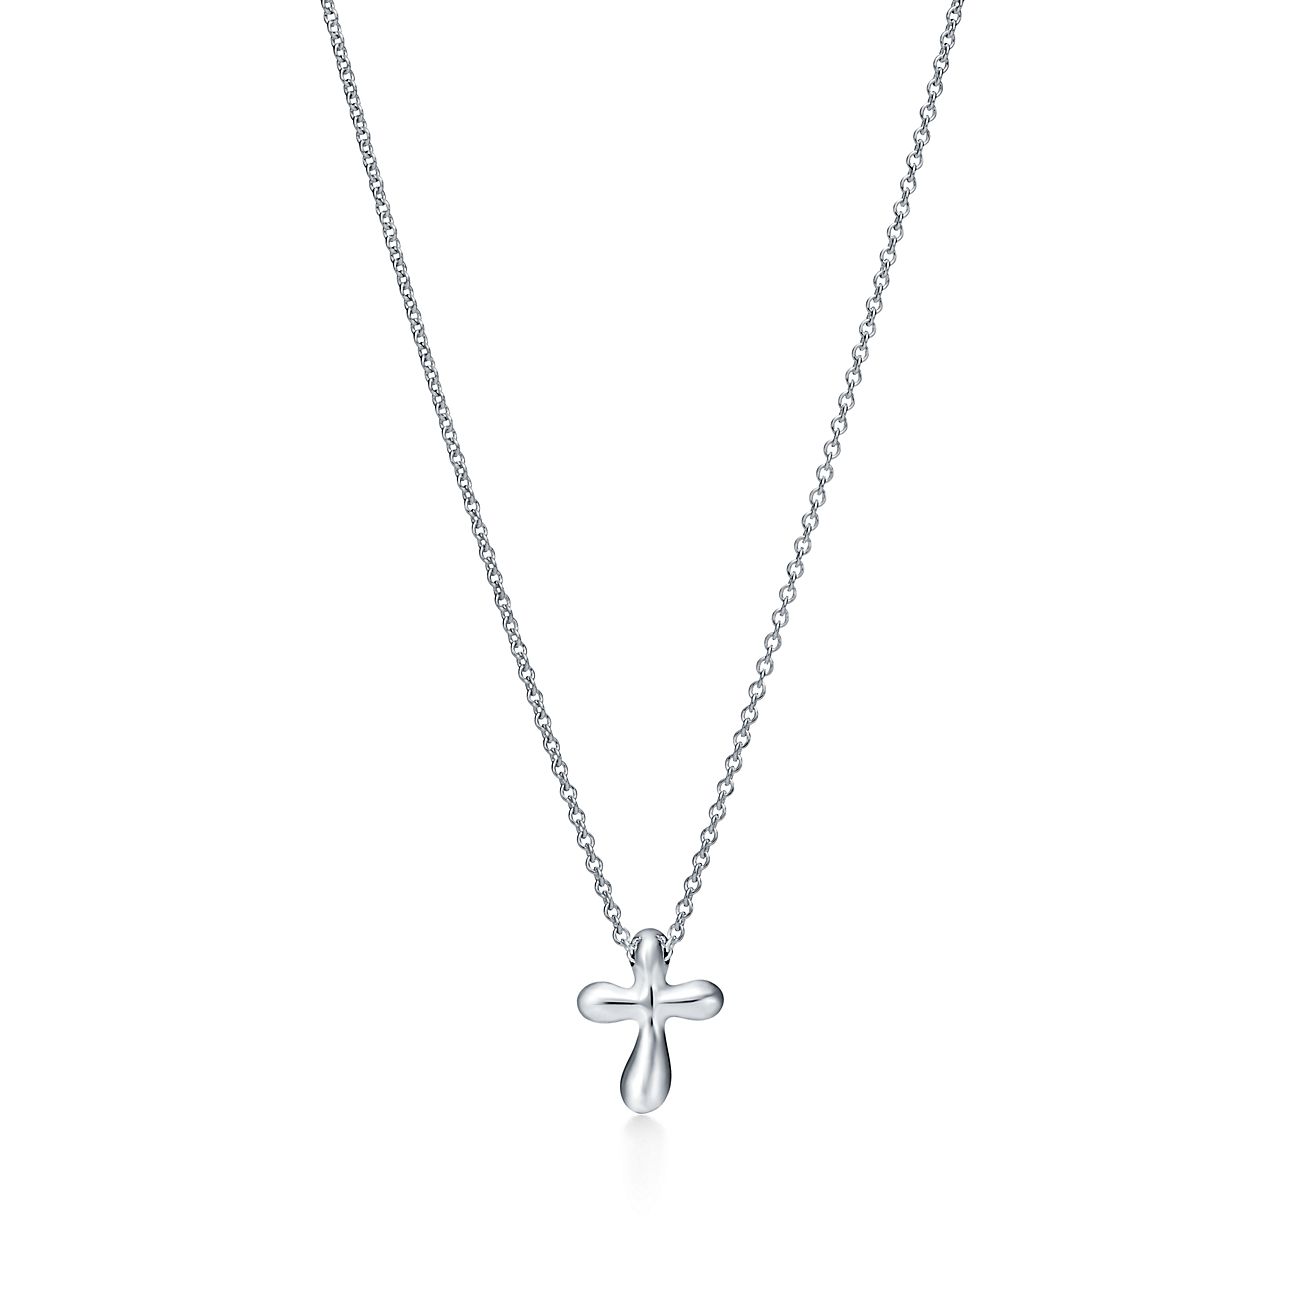 Amazon.com: Tiffany Cross Necklace